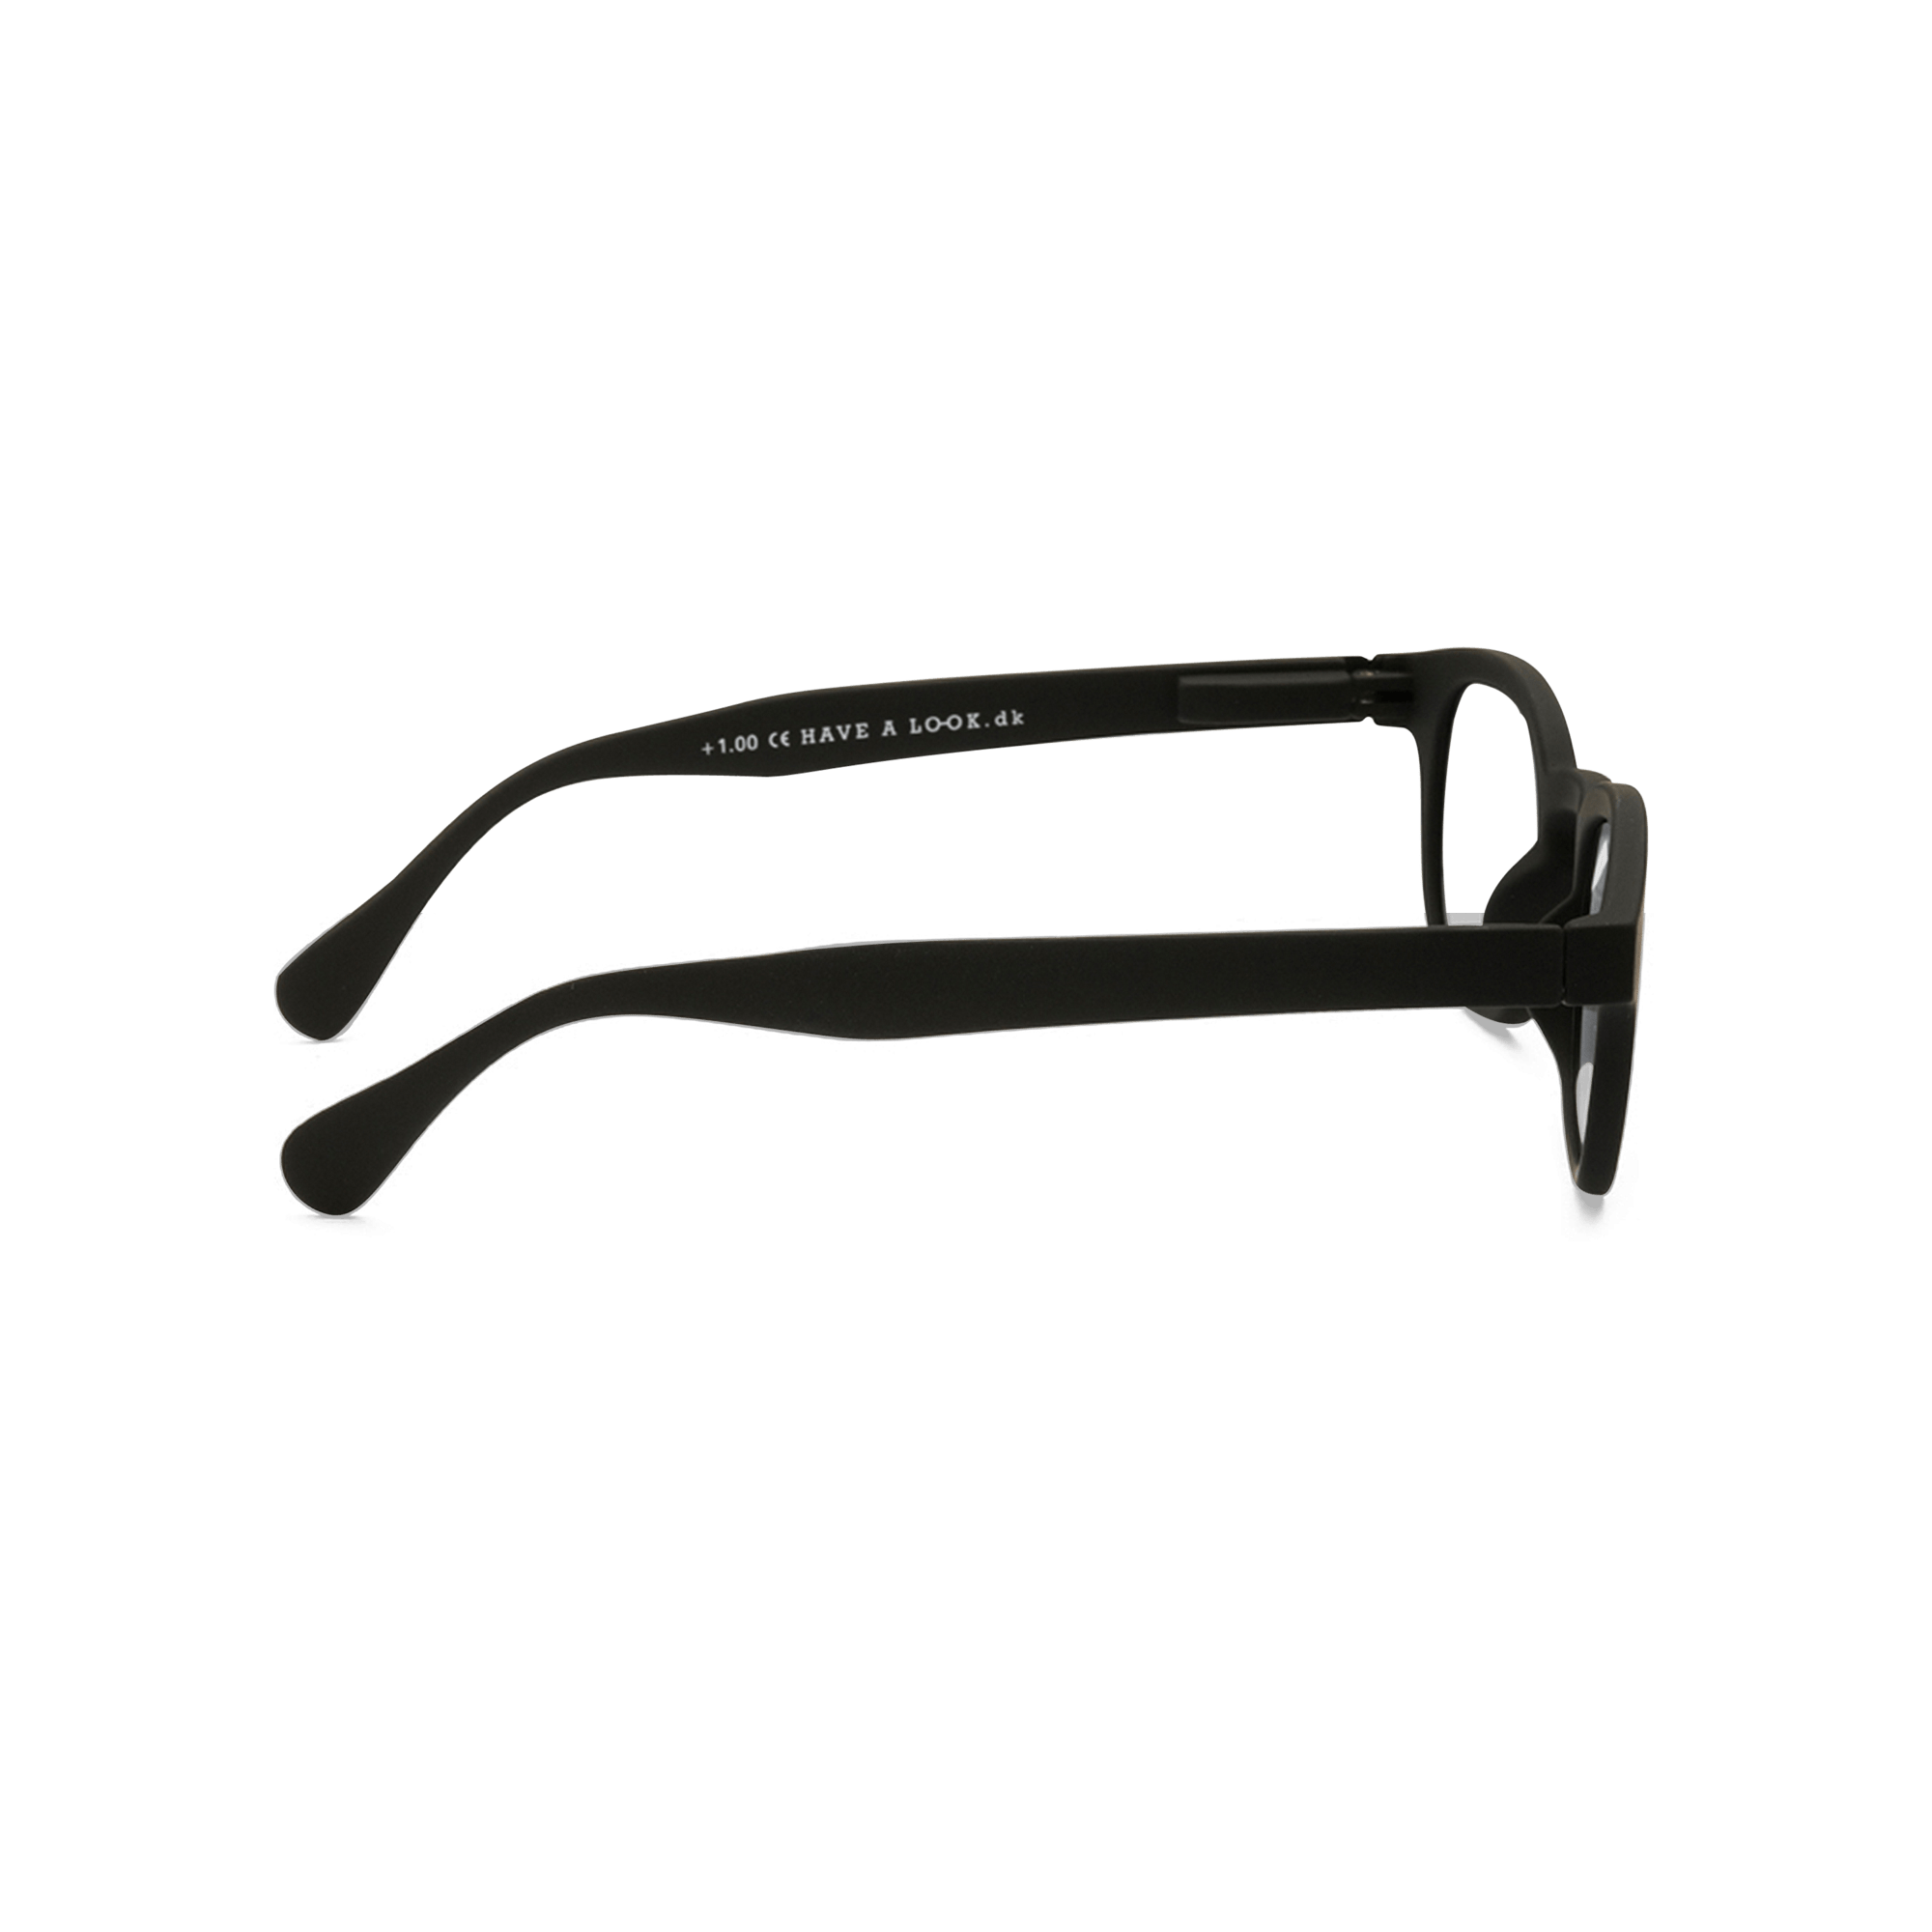 Sonnenfernbrillen Type C - black